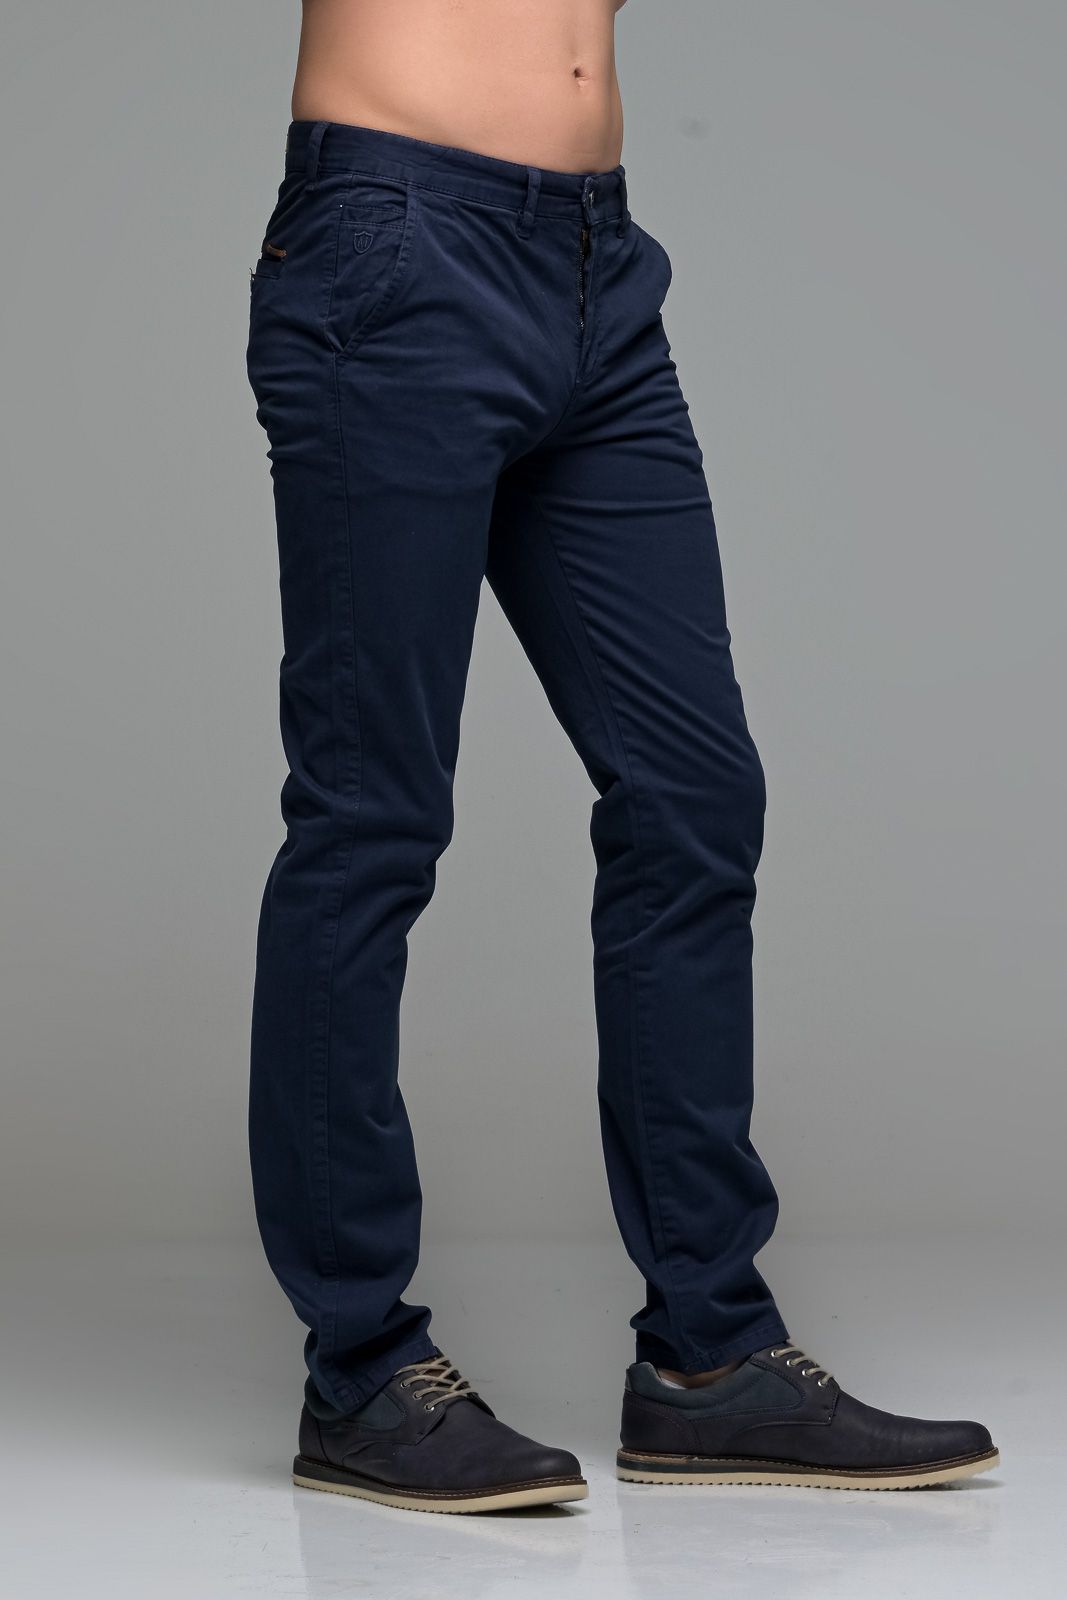 Καλοκαιρινό Ανδρικό Chino Παντελόνι MASSARO Μπλε- Slim fit